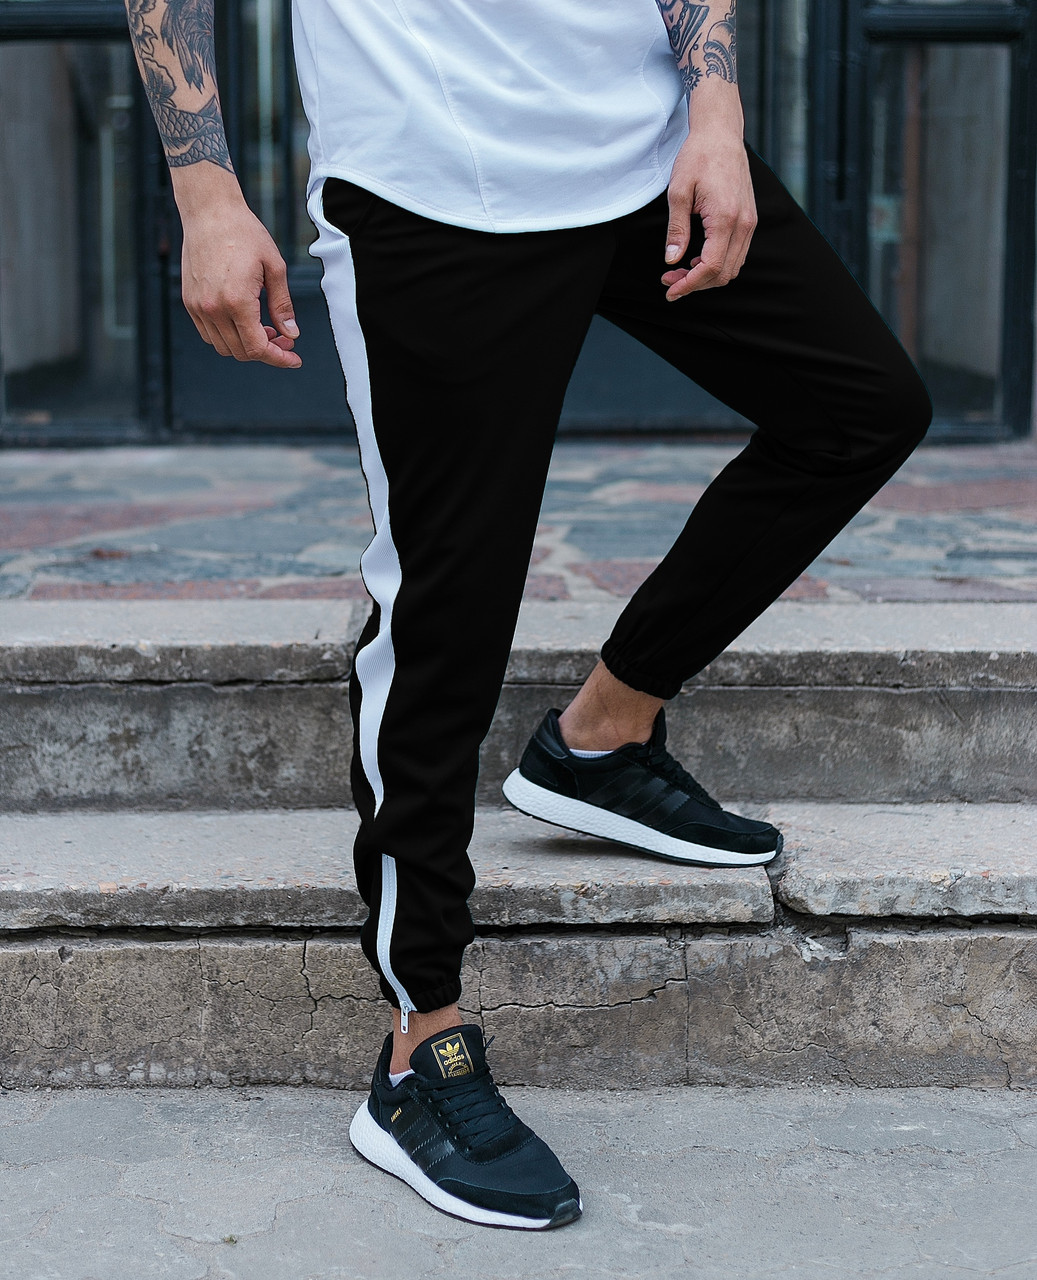 Спортивные штаны черные с белой полоской (лампасом) мужские бренд ТУР модель Рокки (Rocky) TURWEAR